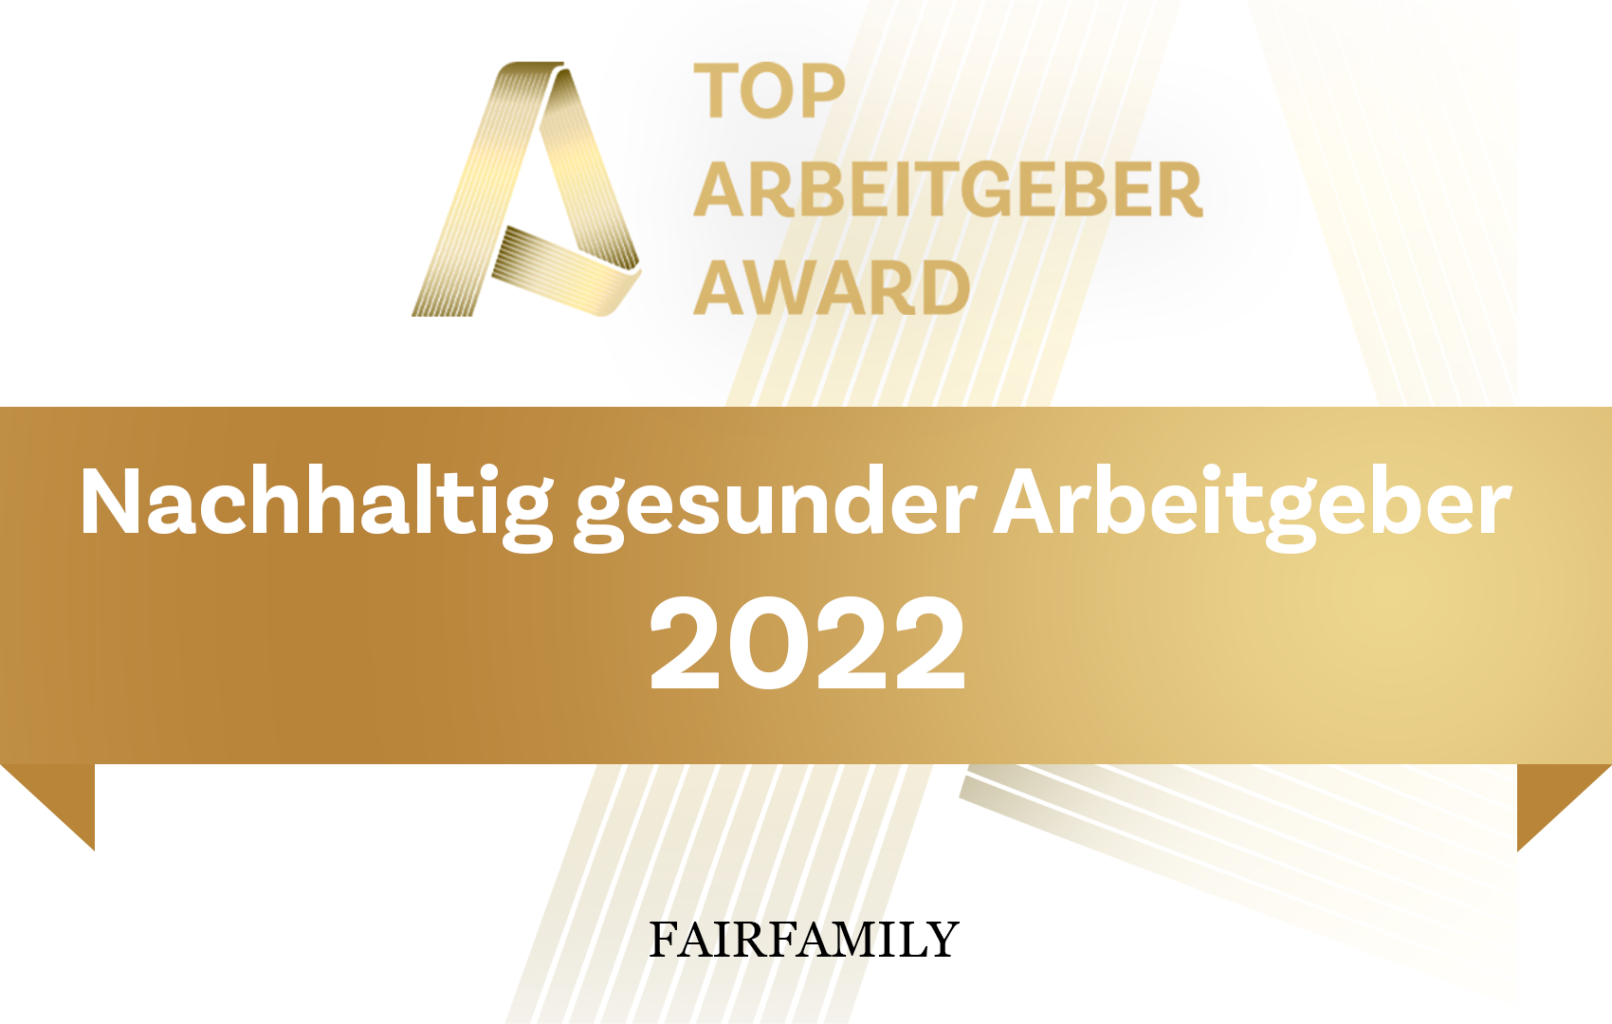 TOP Arbeitgeber Award Fairfamily